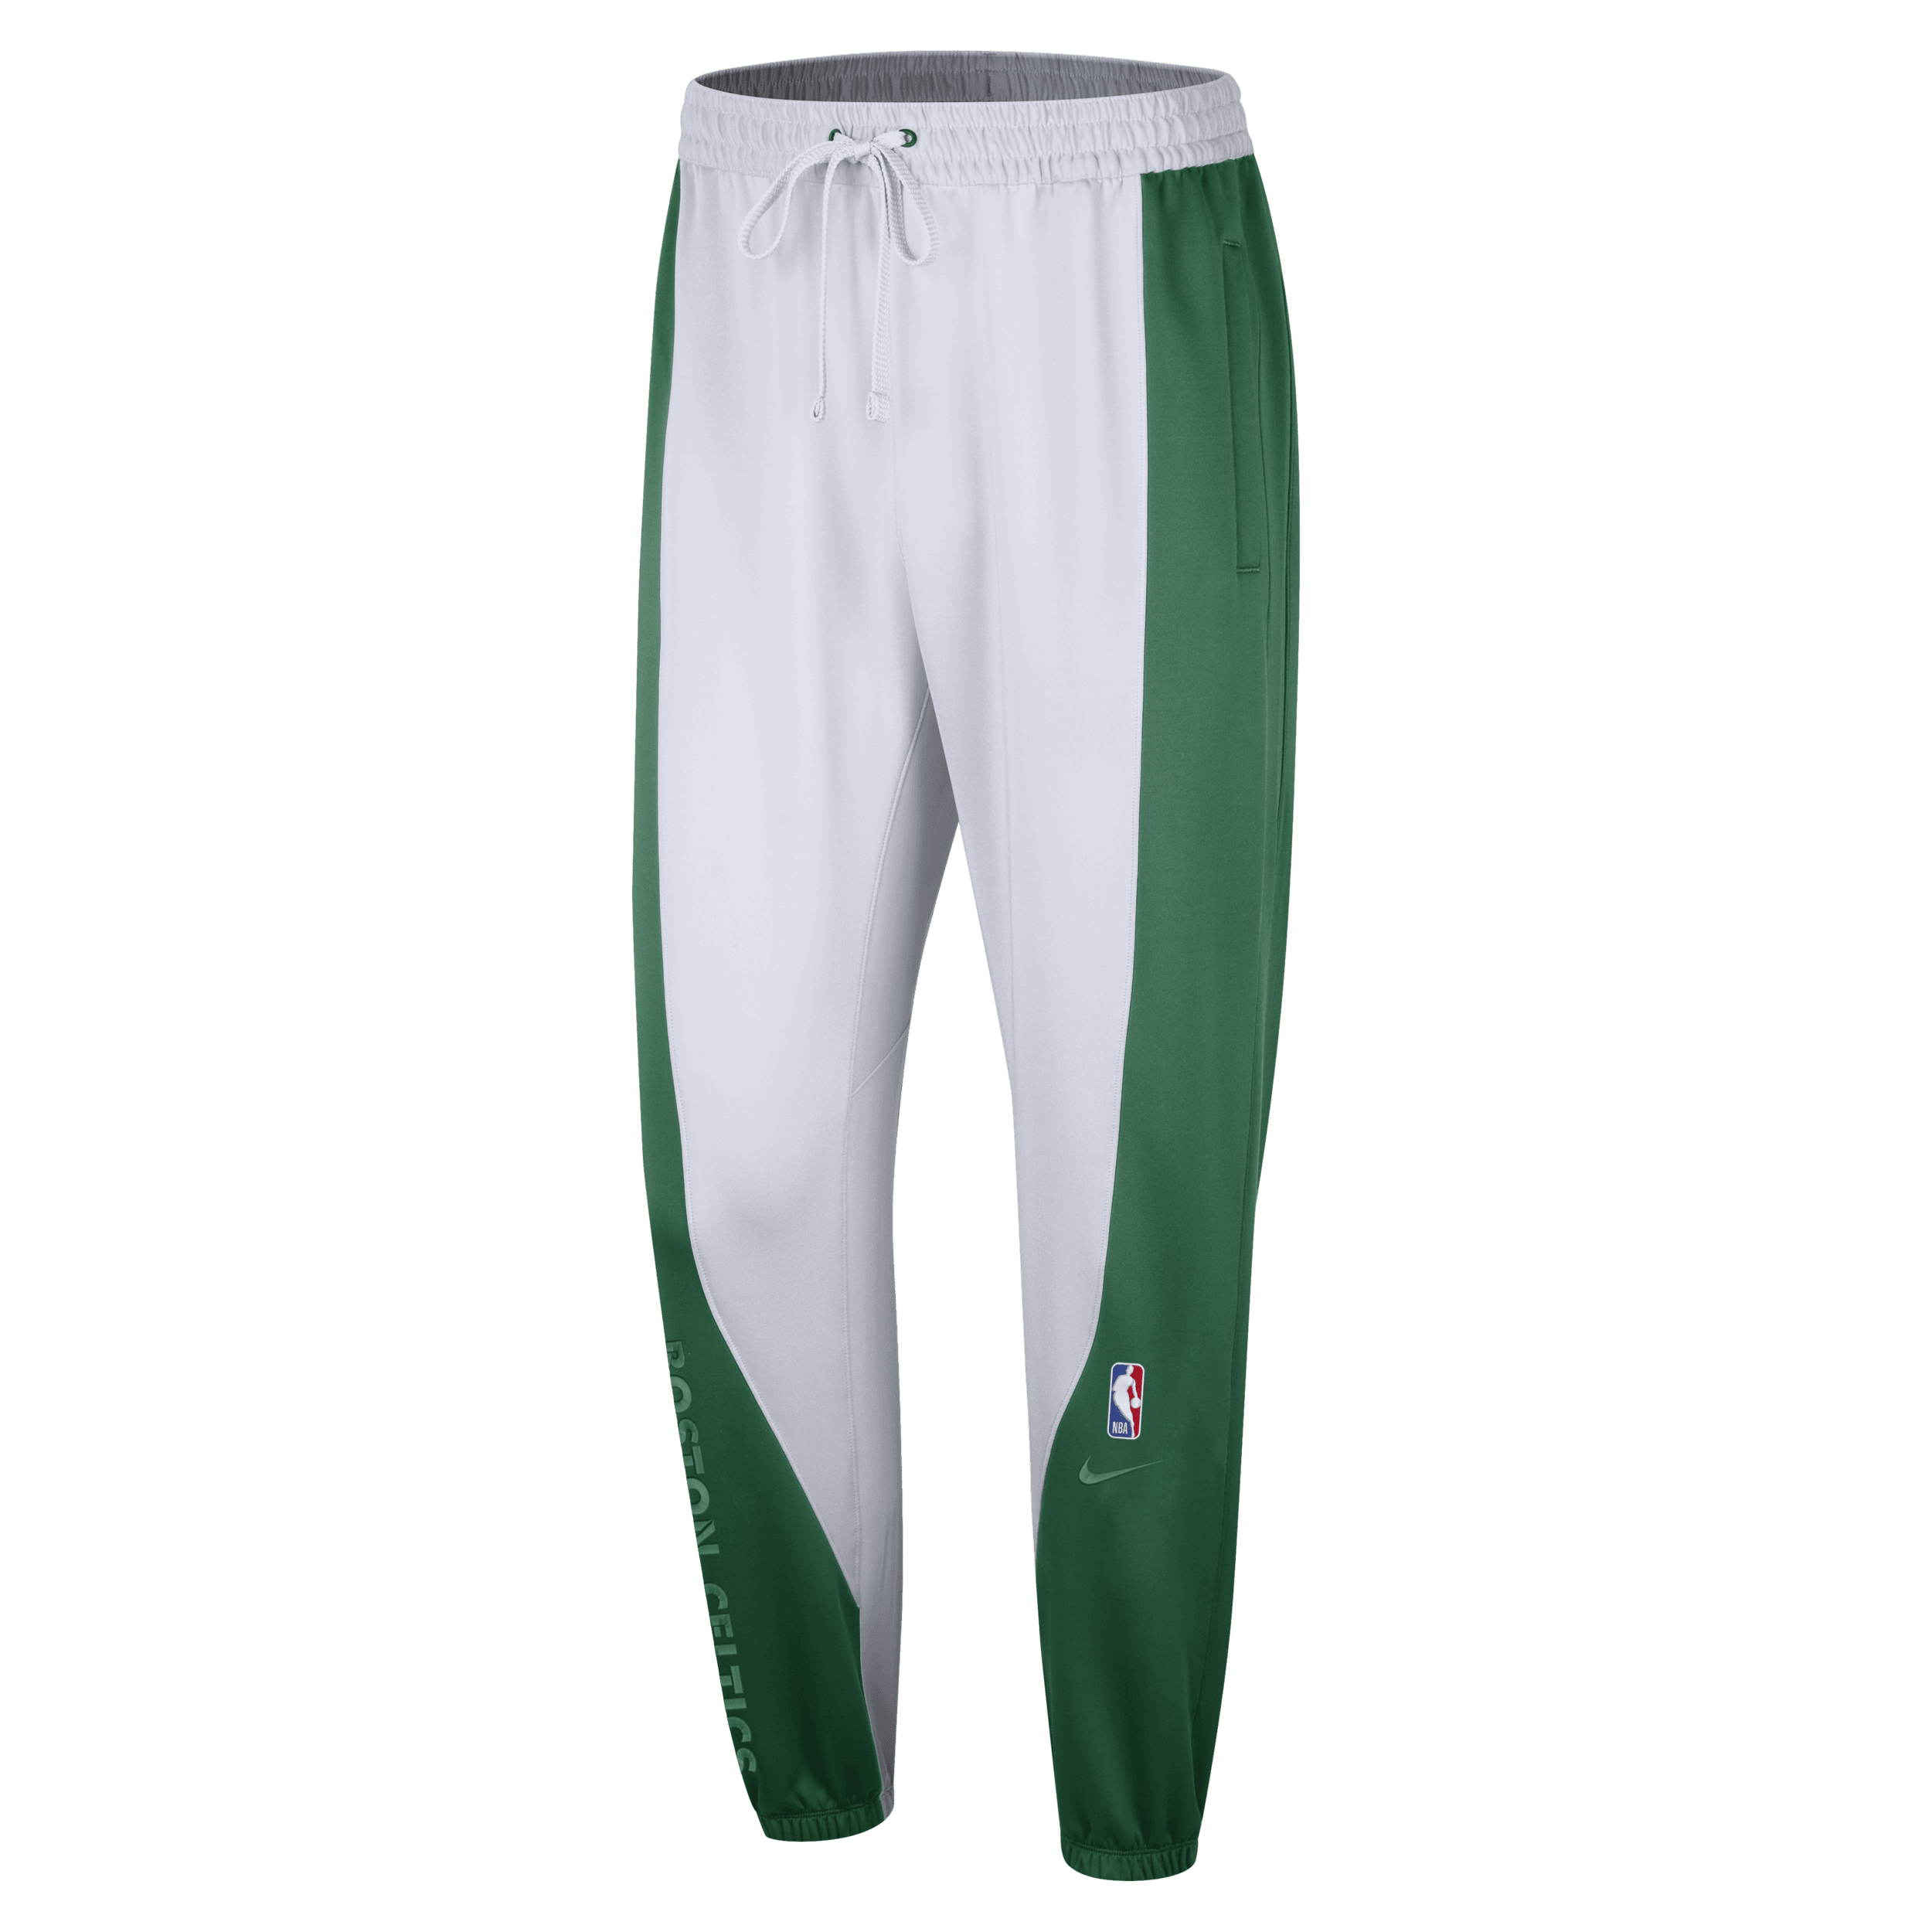 Pantaloni Boston Celtics Showtime Nike Dri-FIT NBA - Uomo - Verde